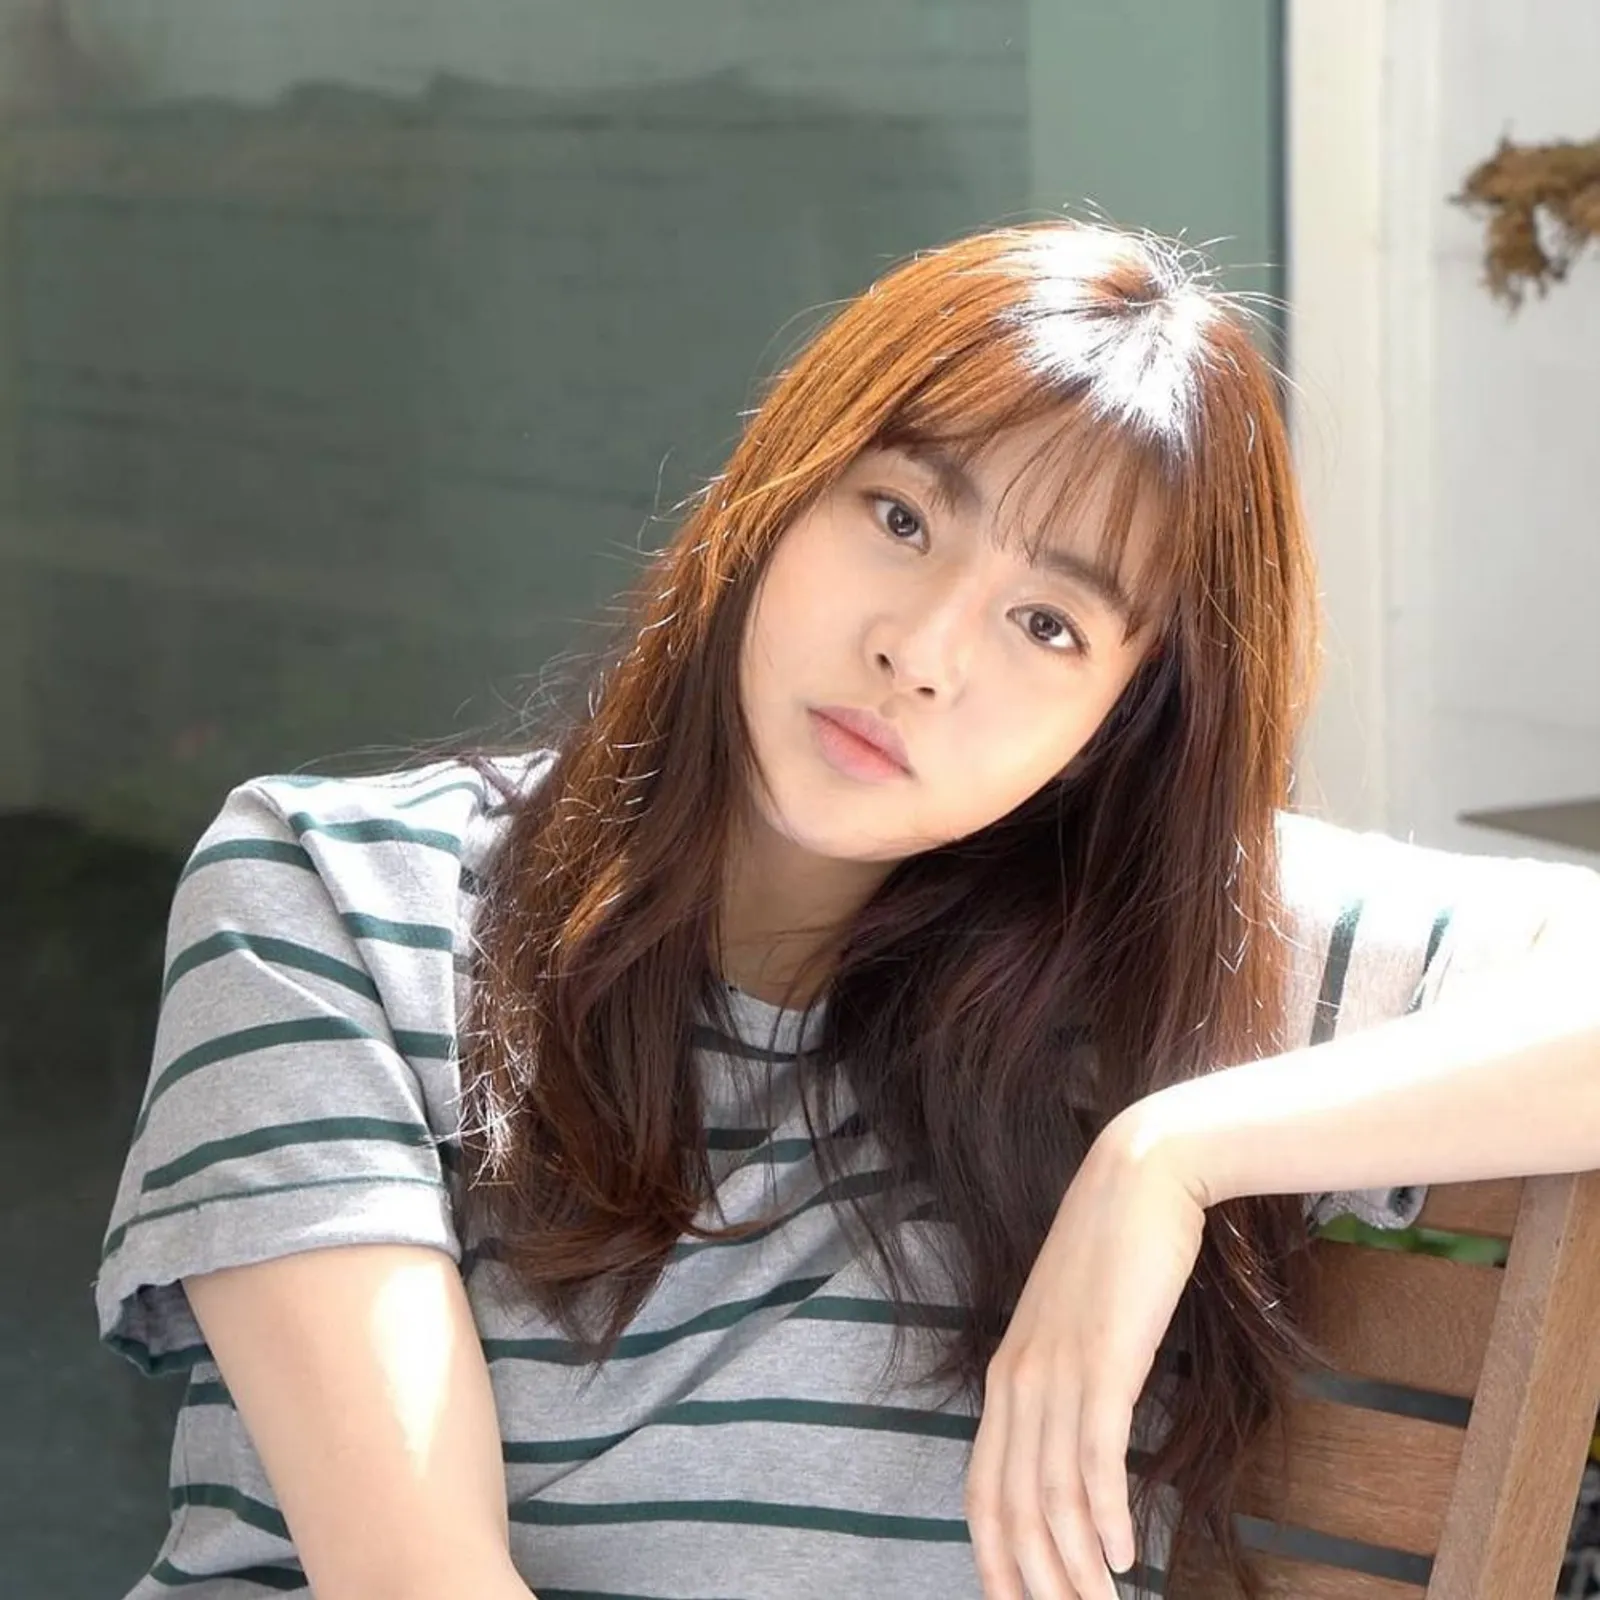 9 Karakter di Drama Korea Populer yang Hampir Diperankan Aktris Lain